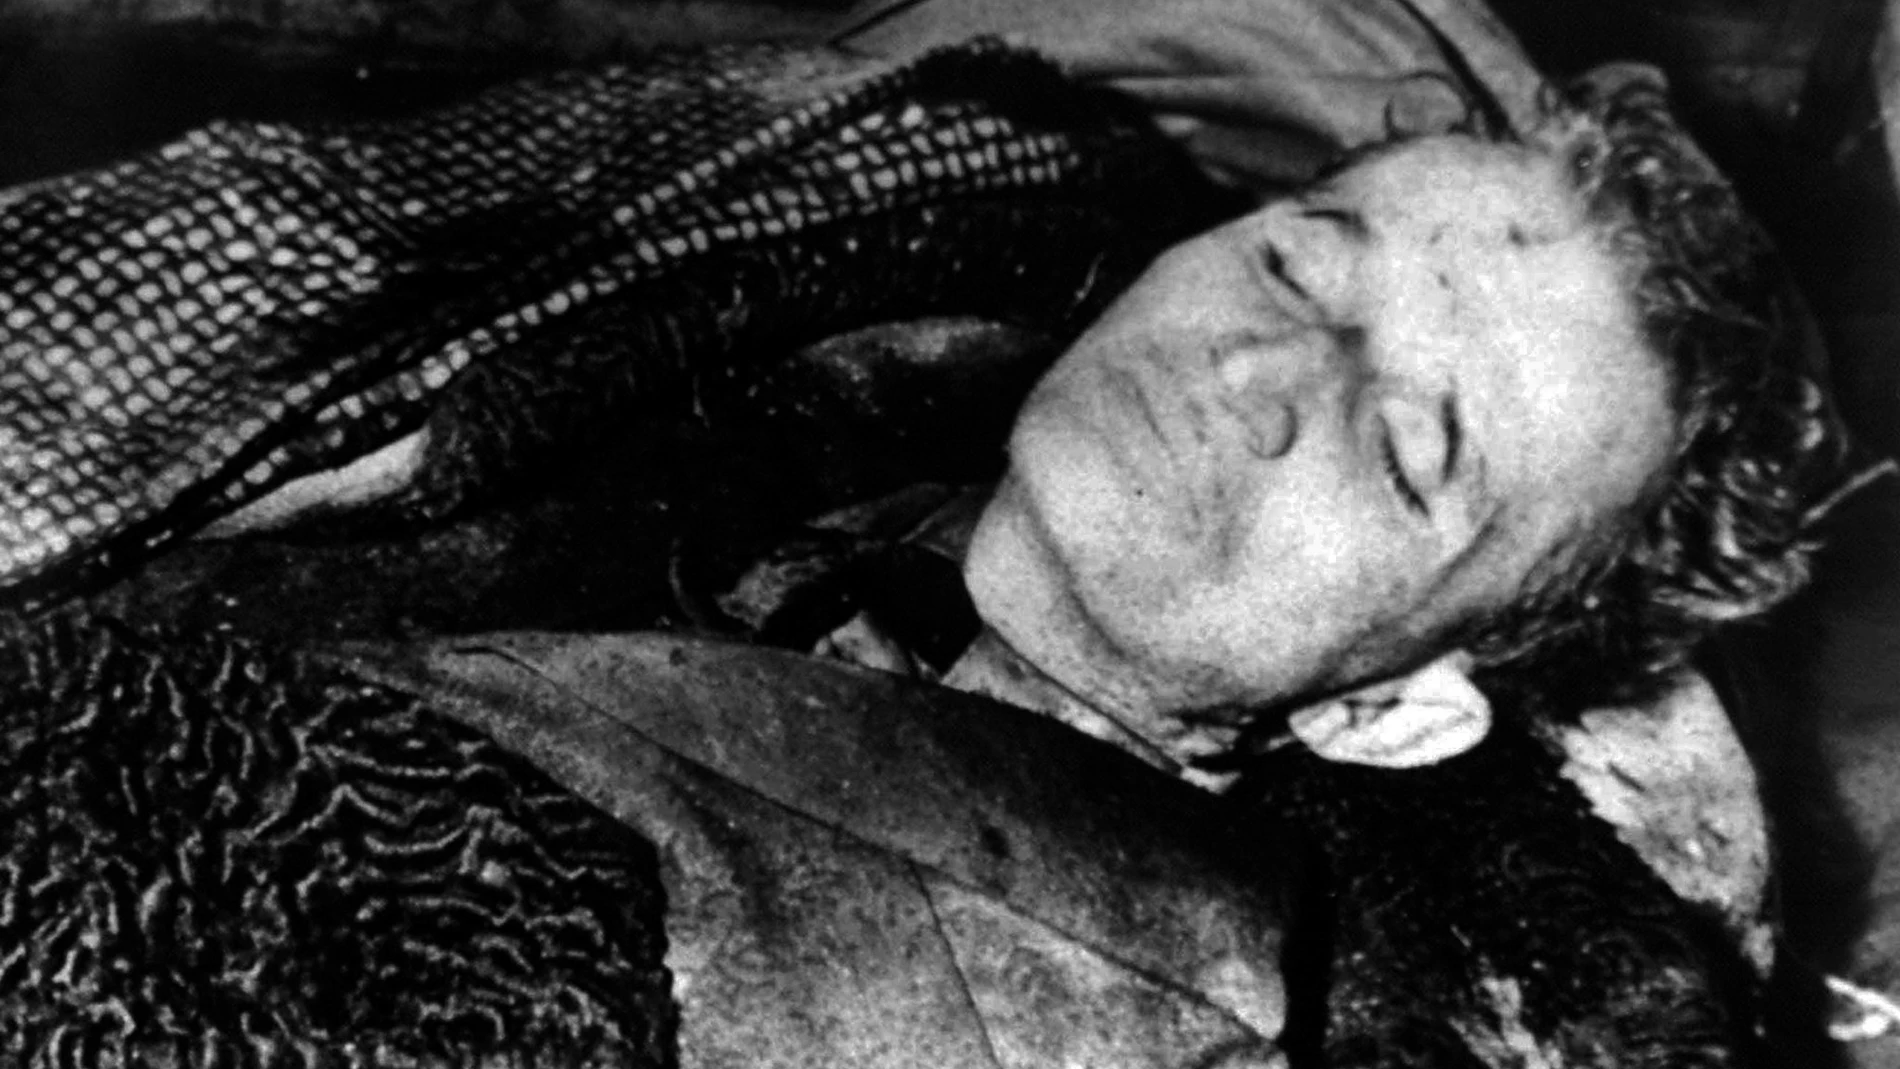 Una de las imágenes emitidas por la televisión del cuerpo sin vida de Nicolae Ceausescu